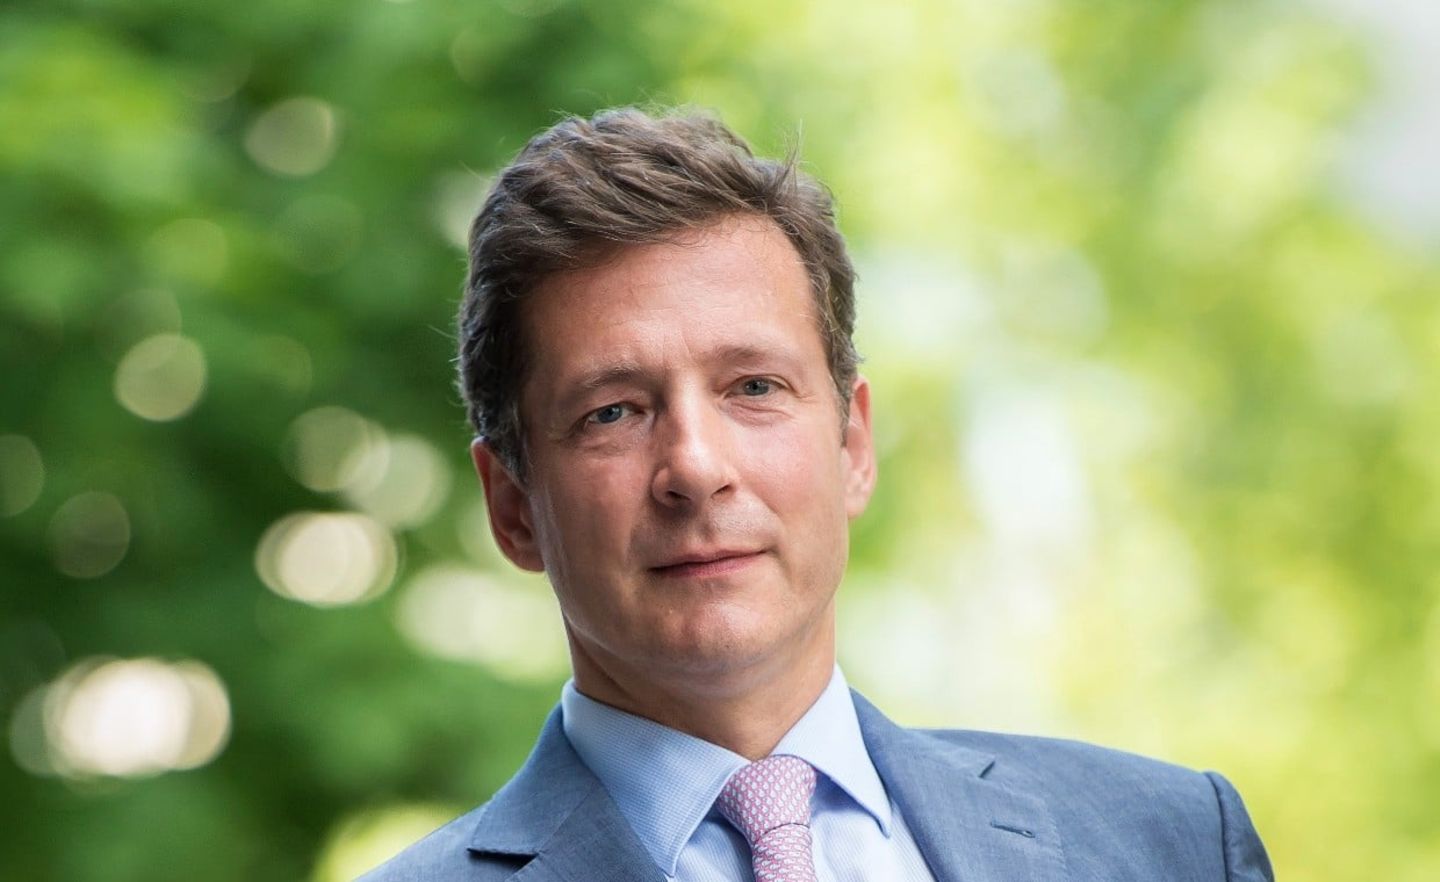 Nicolas Mackel ist CEO von Luxembourg for Finance, der Standort-Lobby des Großherzogtums